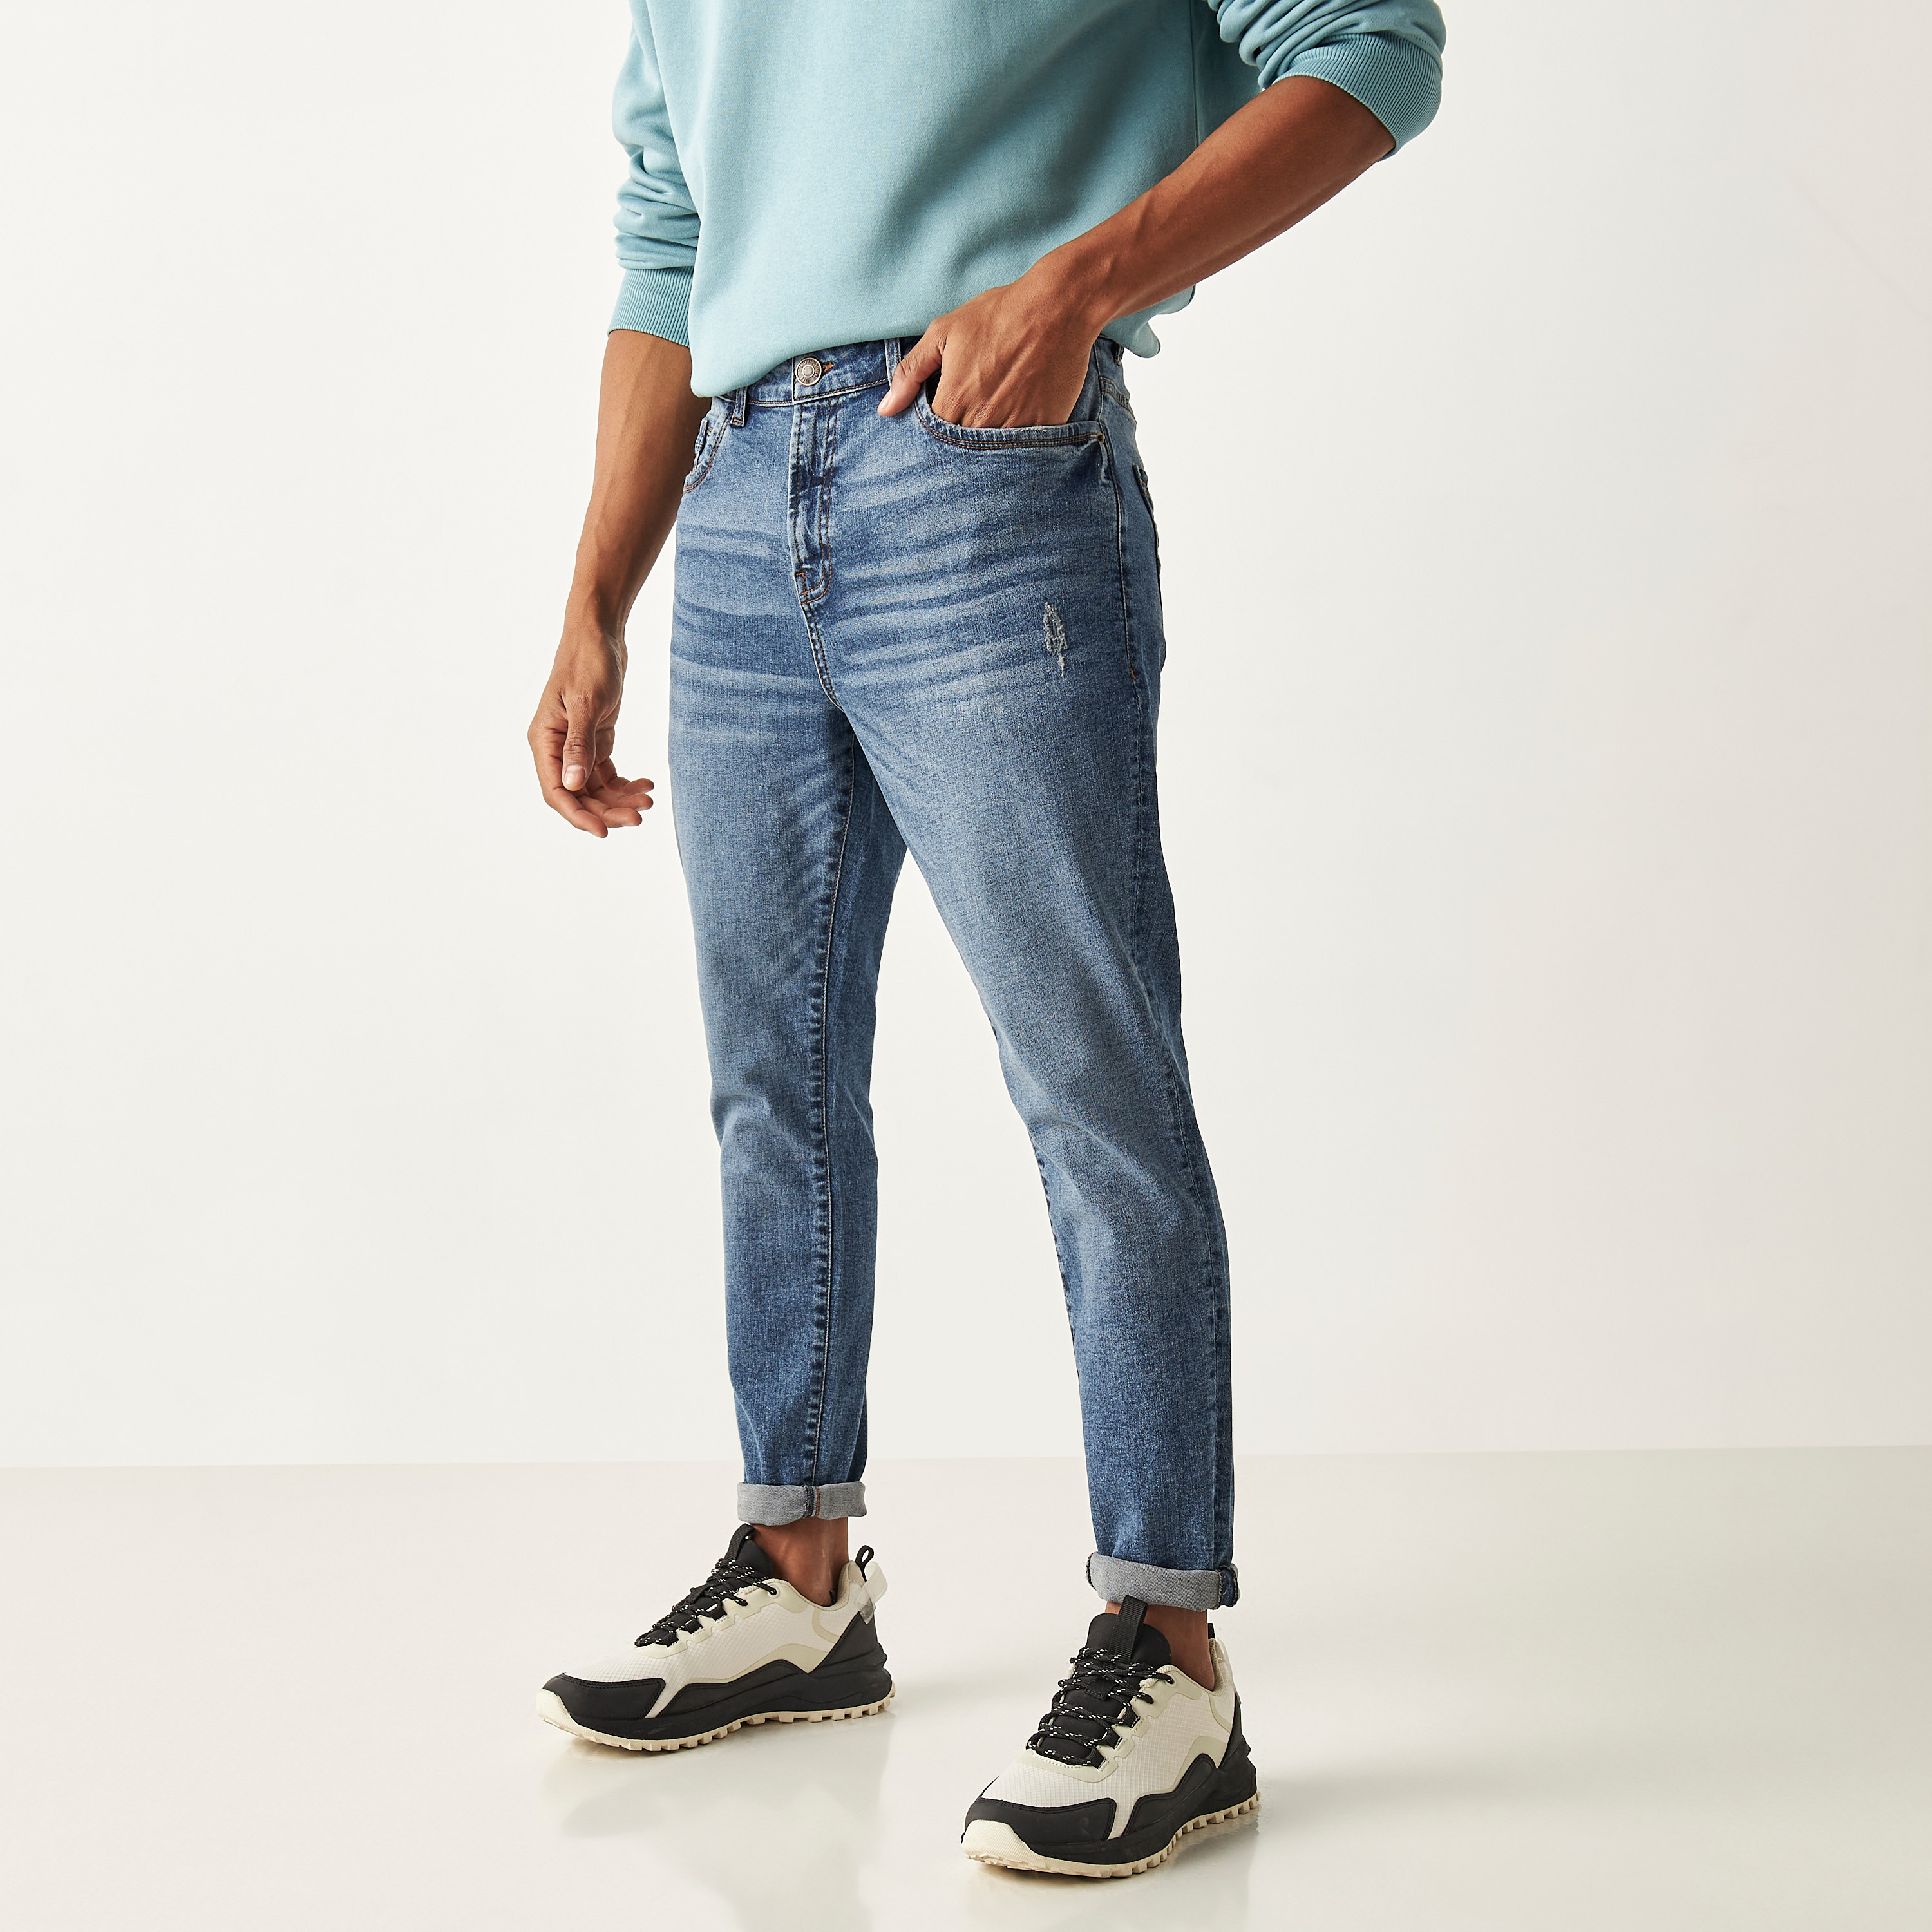 Jeans & Shorts | Men's Wearhouse